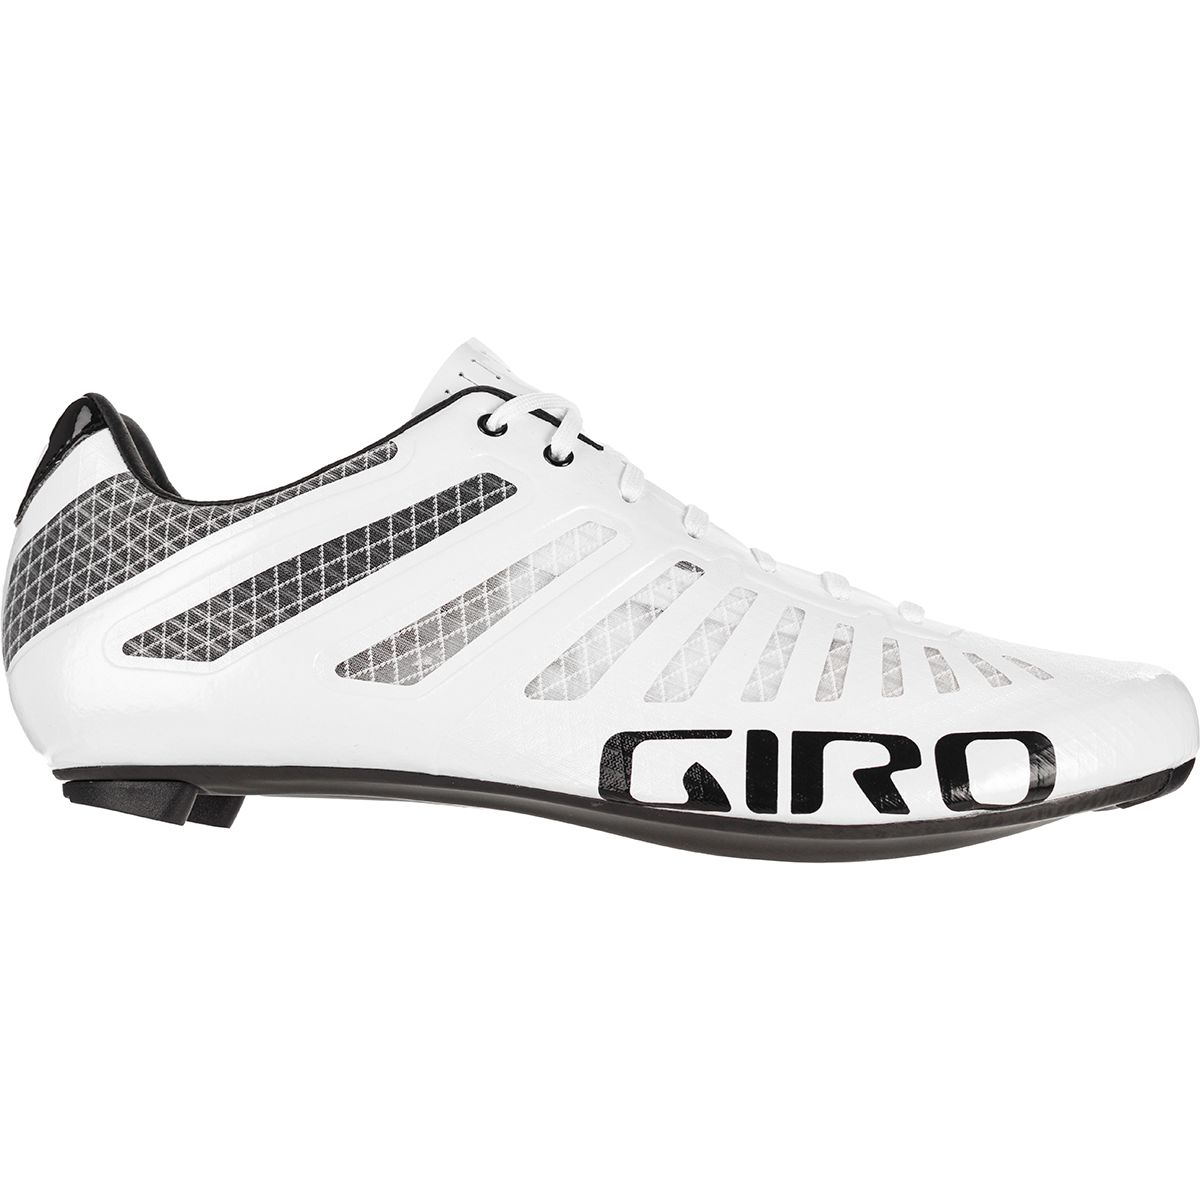 Giro Empire SLX Cycling Shoe - Men's - Men